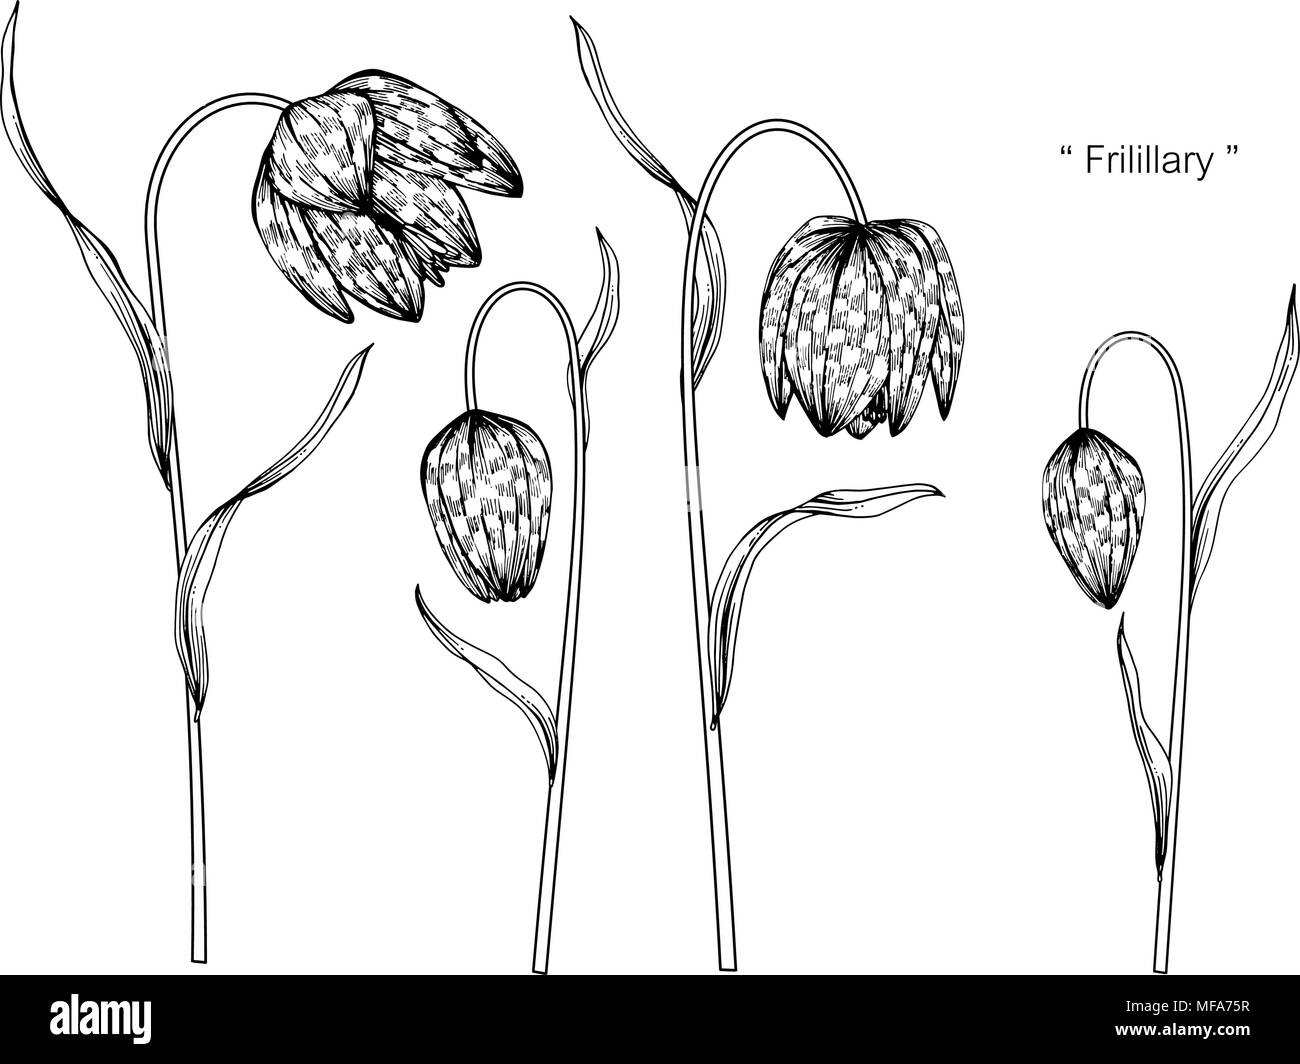 Die Schlange Kopf fritillary Blume zeichnen Abbildung. Schwarz und Weiß mit Line Art auf weißem Hintergrund. Stock Vektor